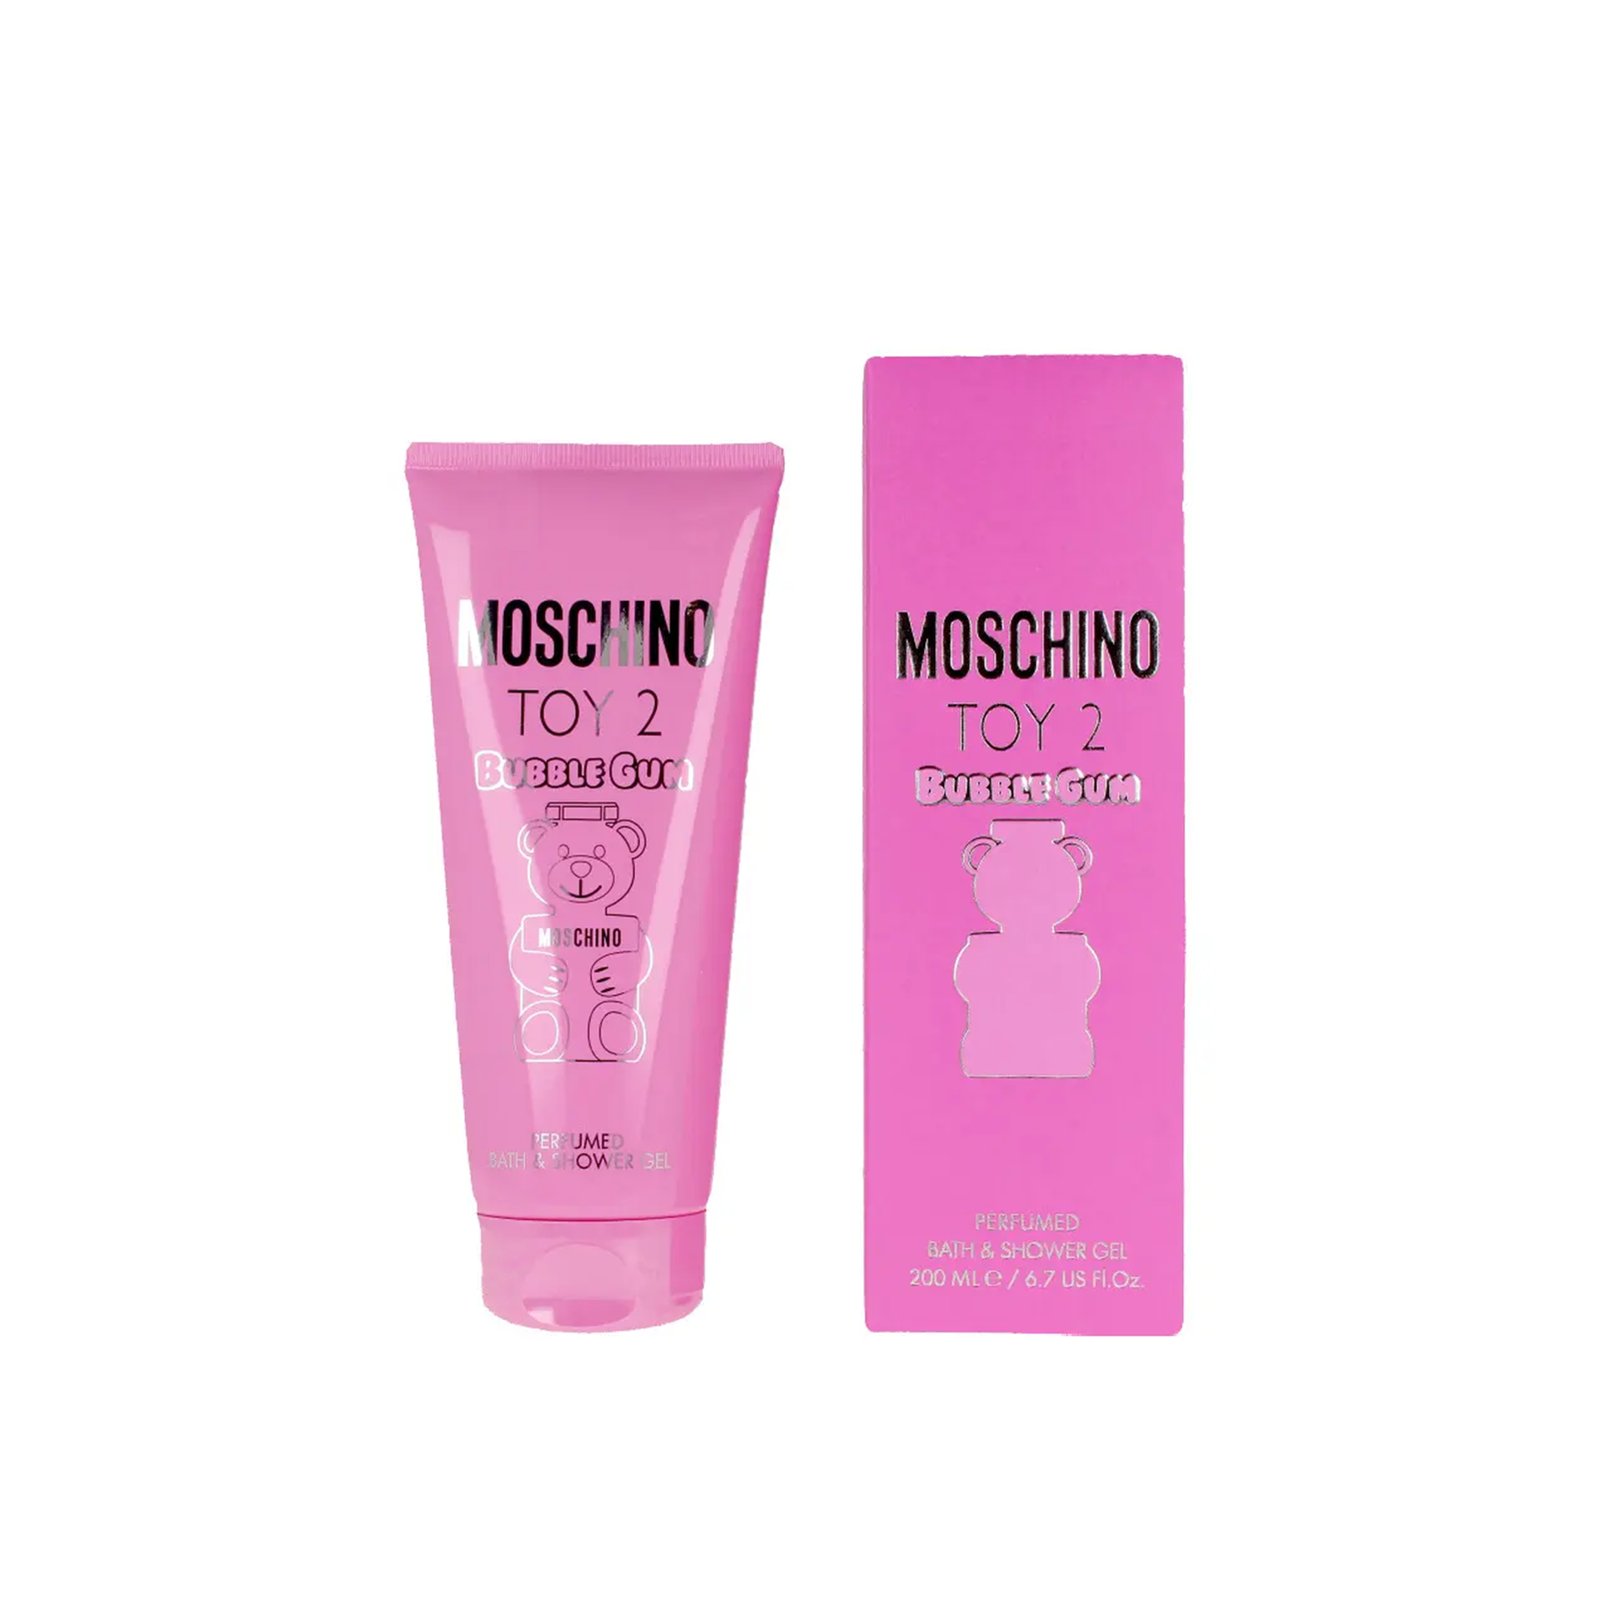 Moschino Toy 2 Bubble Gum Perfumed Bath & Shower Gel 200ml (6.7 fl oz)